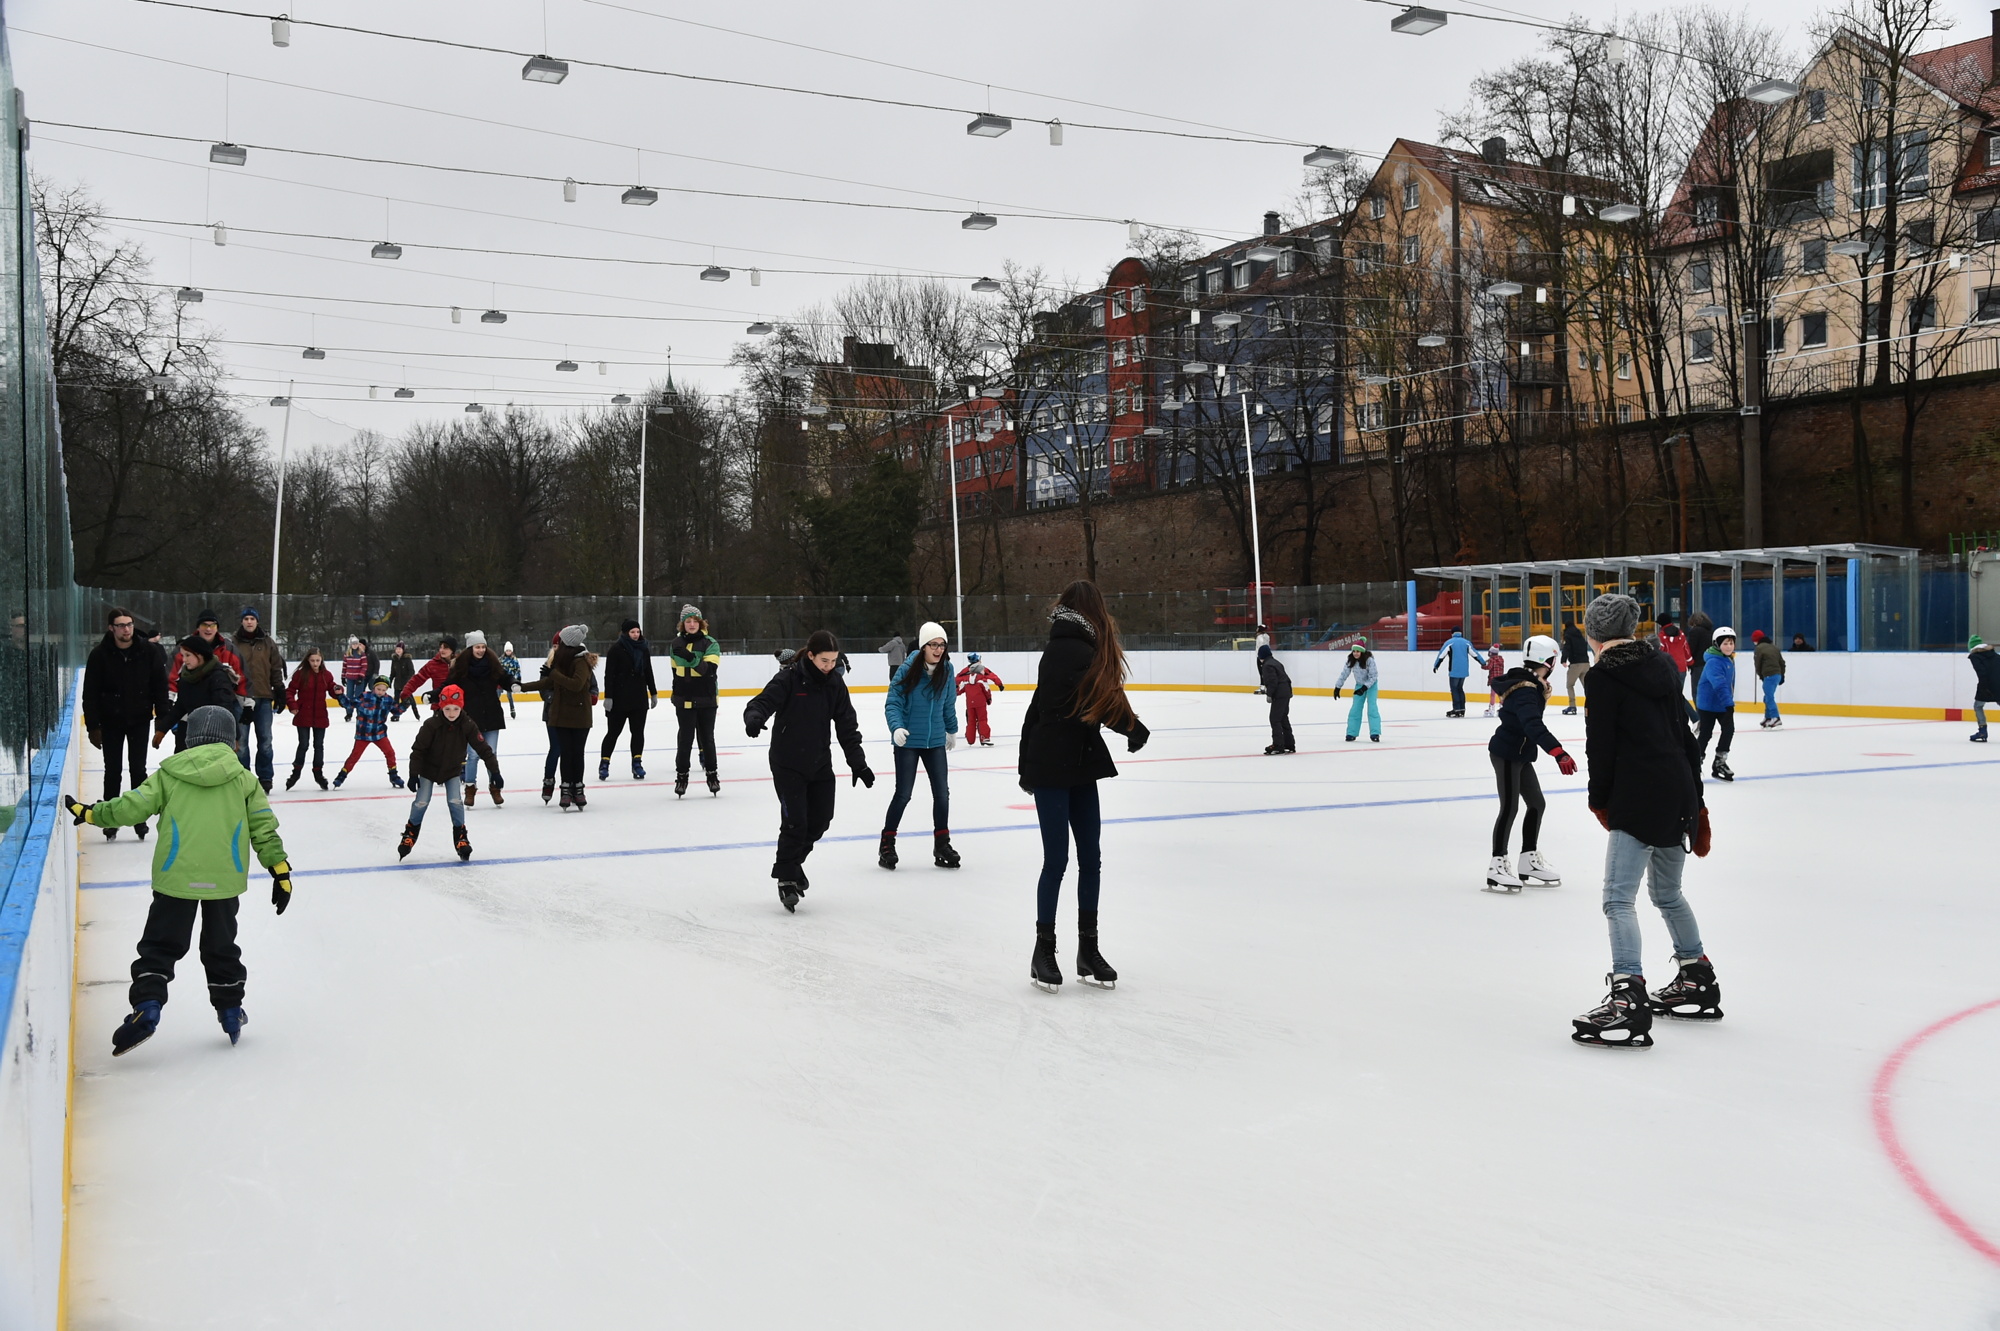 Rund 50 Leute beim Schlittschuhlaufen auf einer Eisfläche ohne Dach.